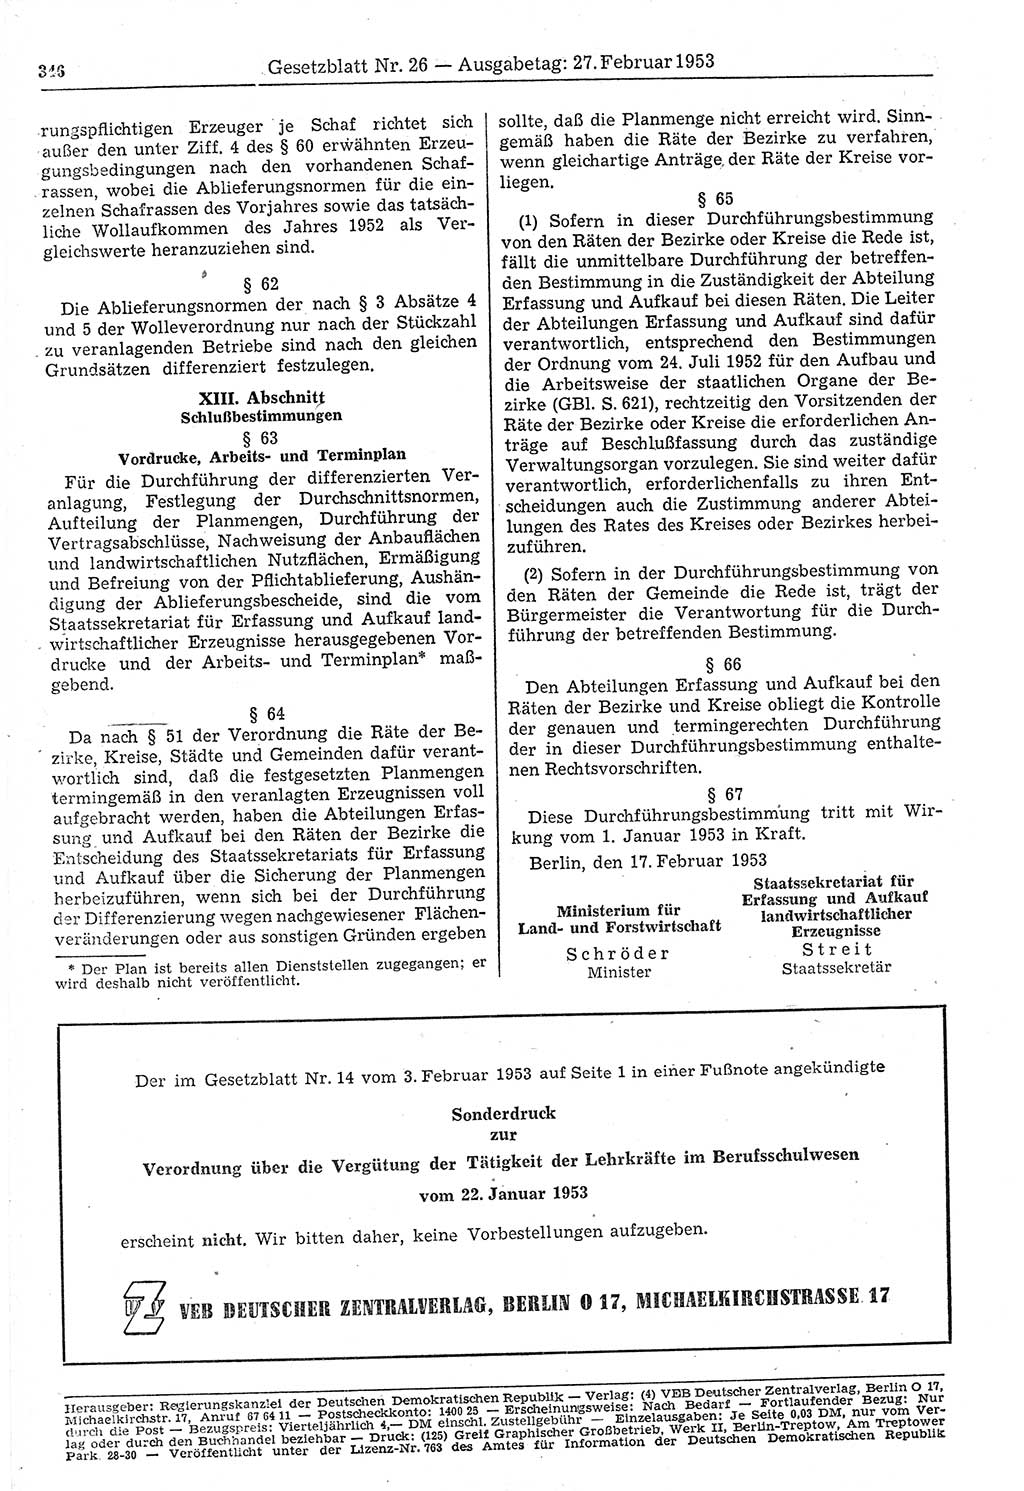 Gesetzblatt (GBl.) der Deutschen Demokratischen Republik (DDR) 1953, Seite 346 (GBl. DDR 1953, S. 346)